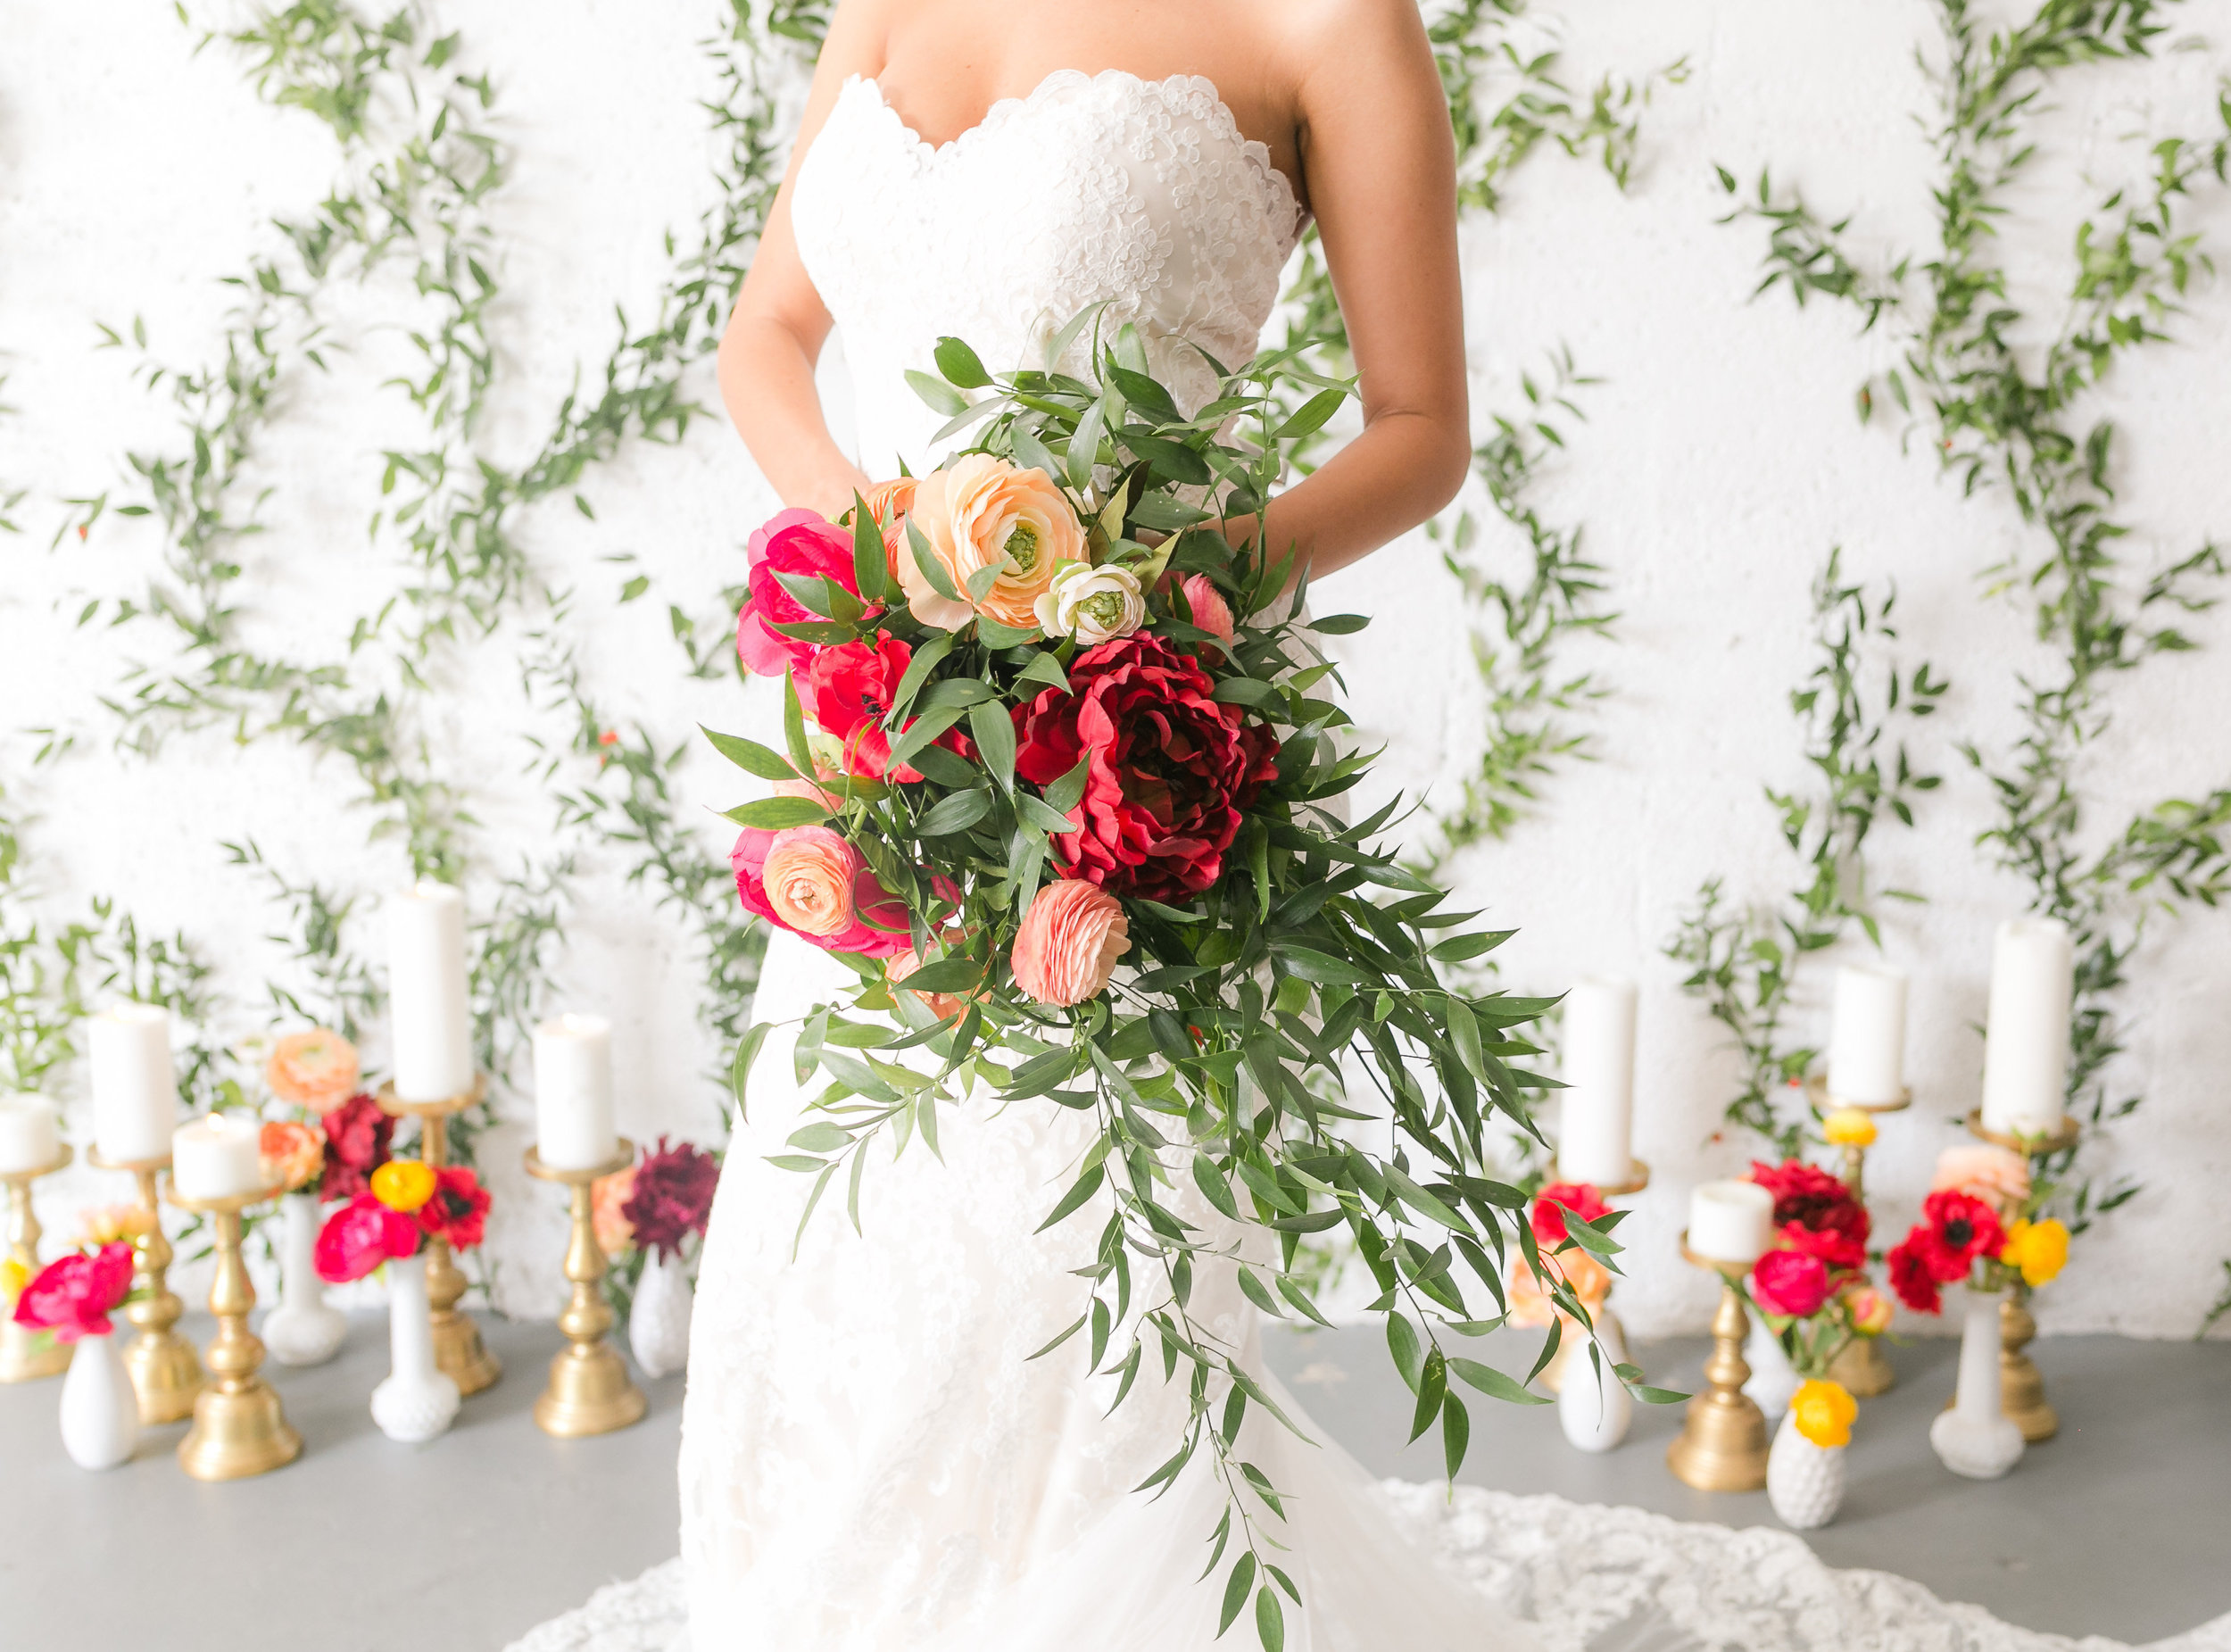 Colorful Wedding Bouquet - Industrial Wedding Decor Ideas